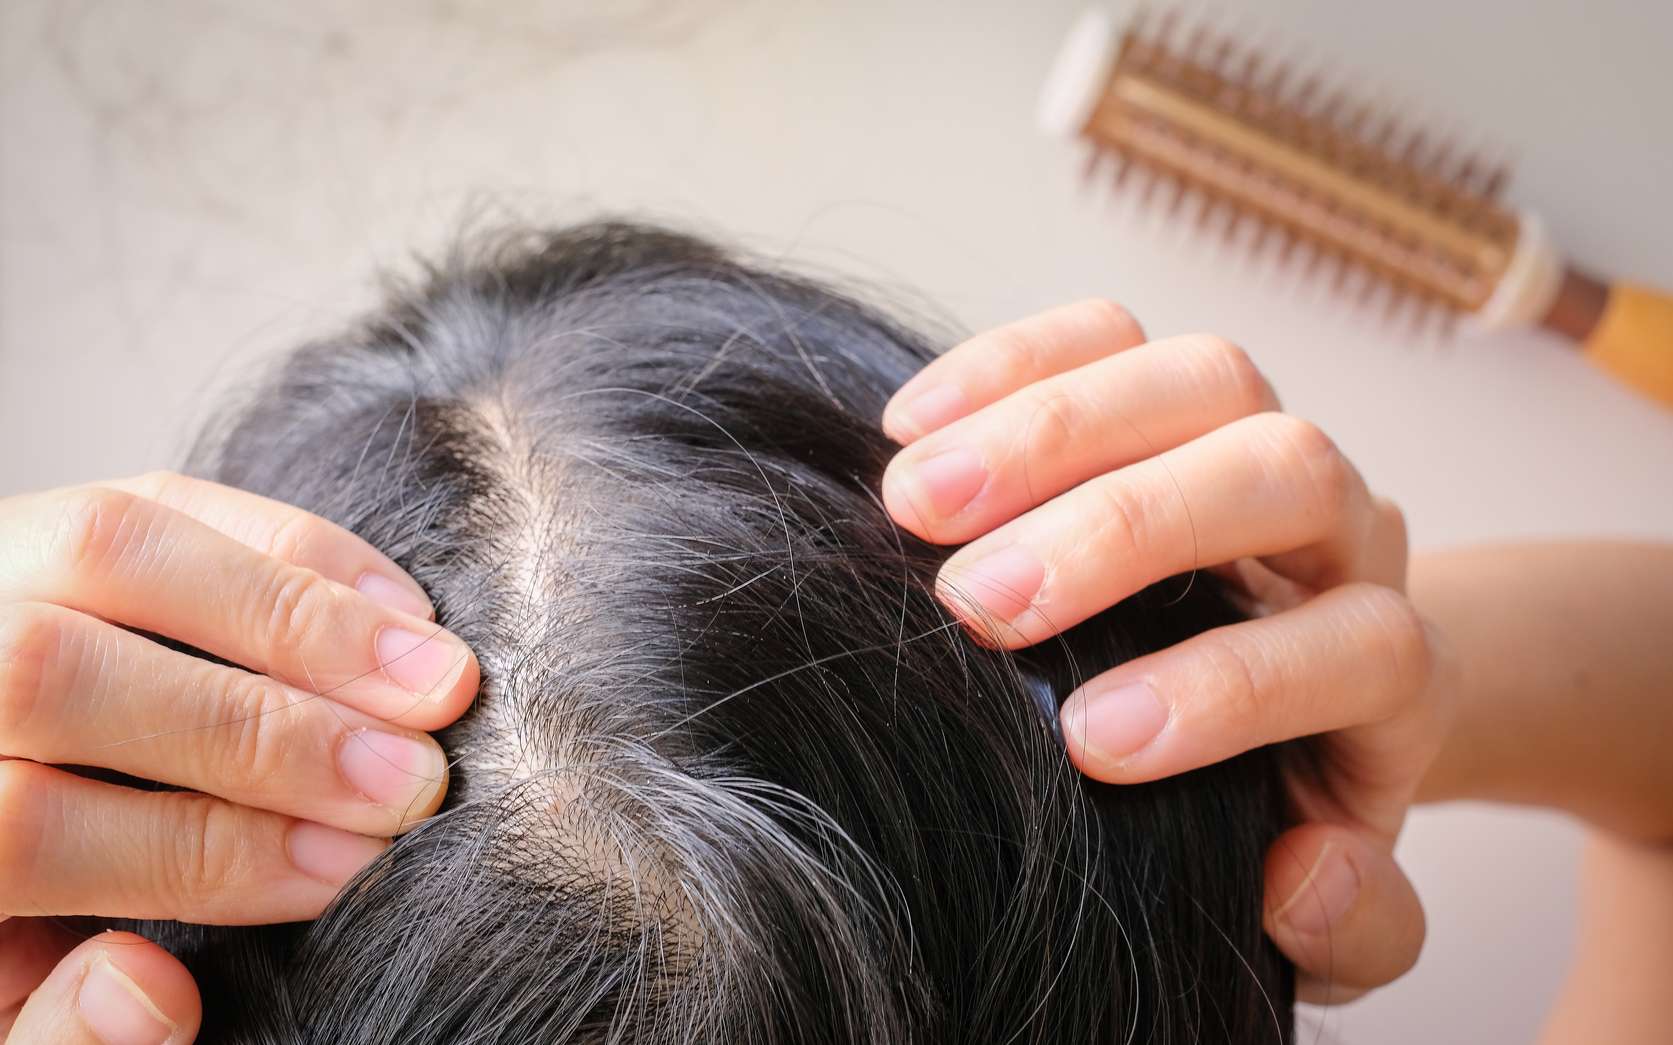 Les facteurs liés à l’affinement et à la chute des cheveux